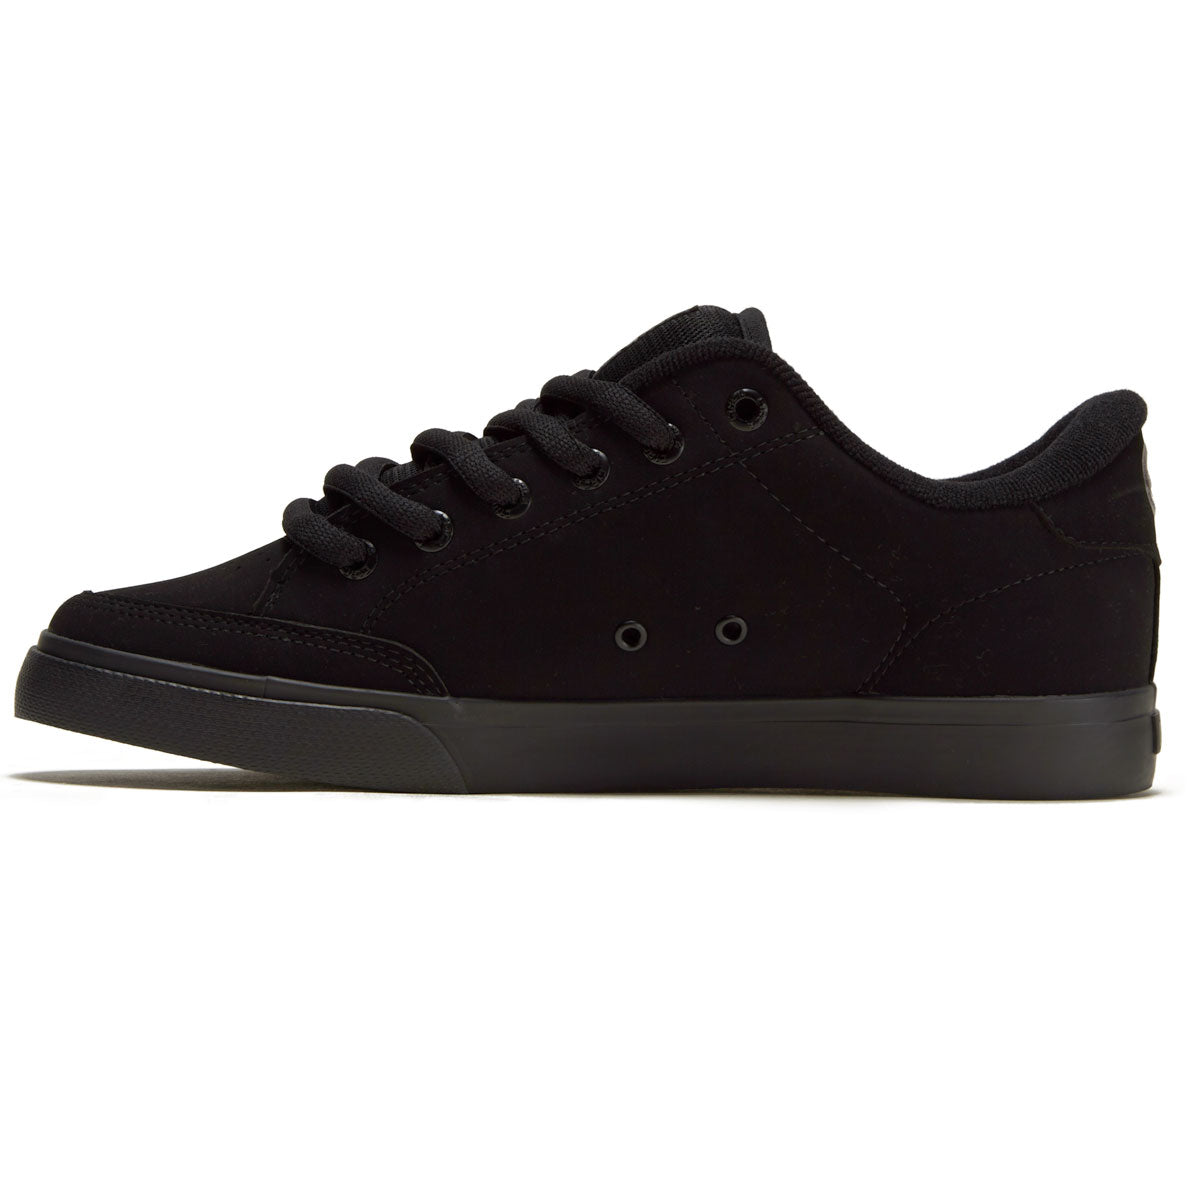 C1rca AL50 Shoes - Black/Black/Synthetic image 2